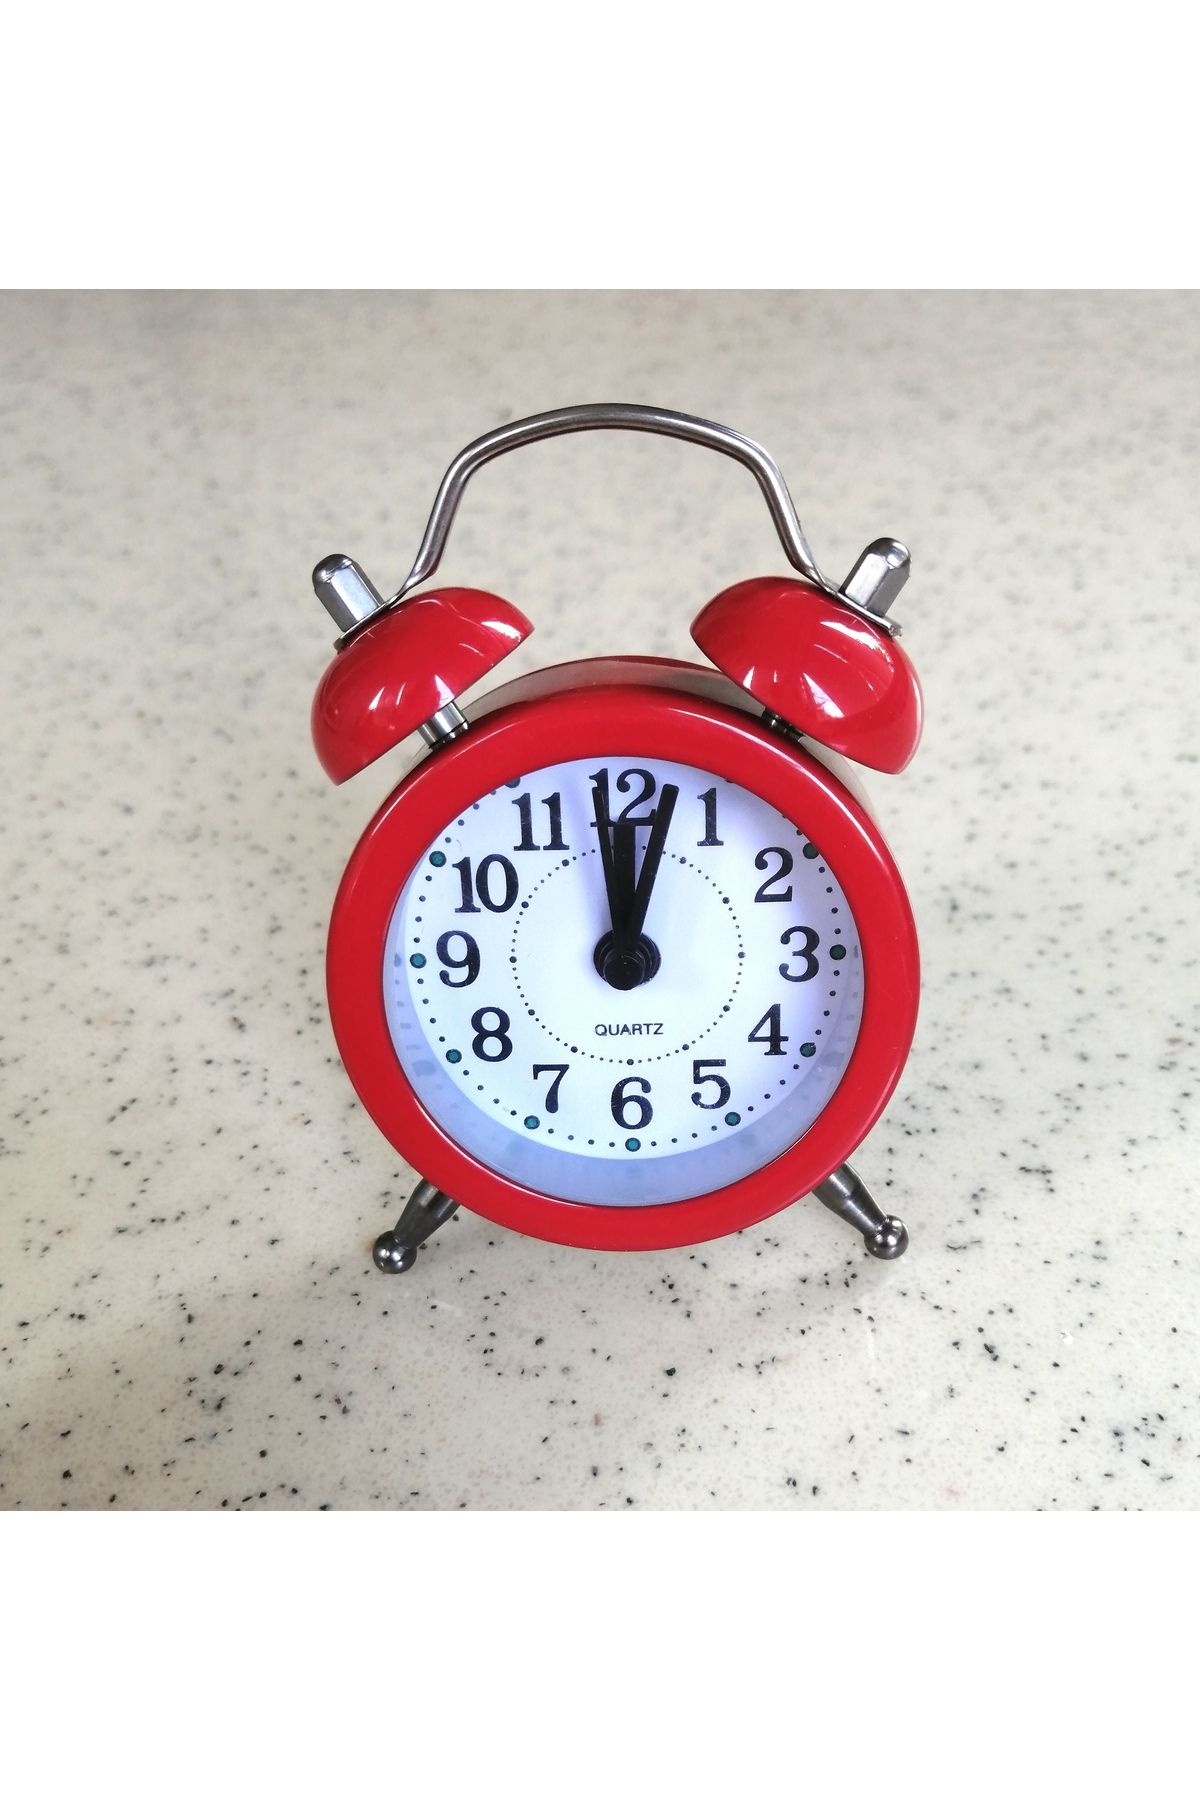 EYO Minyatür alarmlı metal analog dekoratif masa üstü mini çalar saat